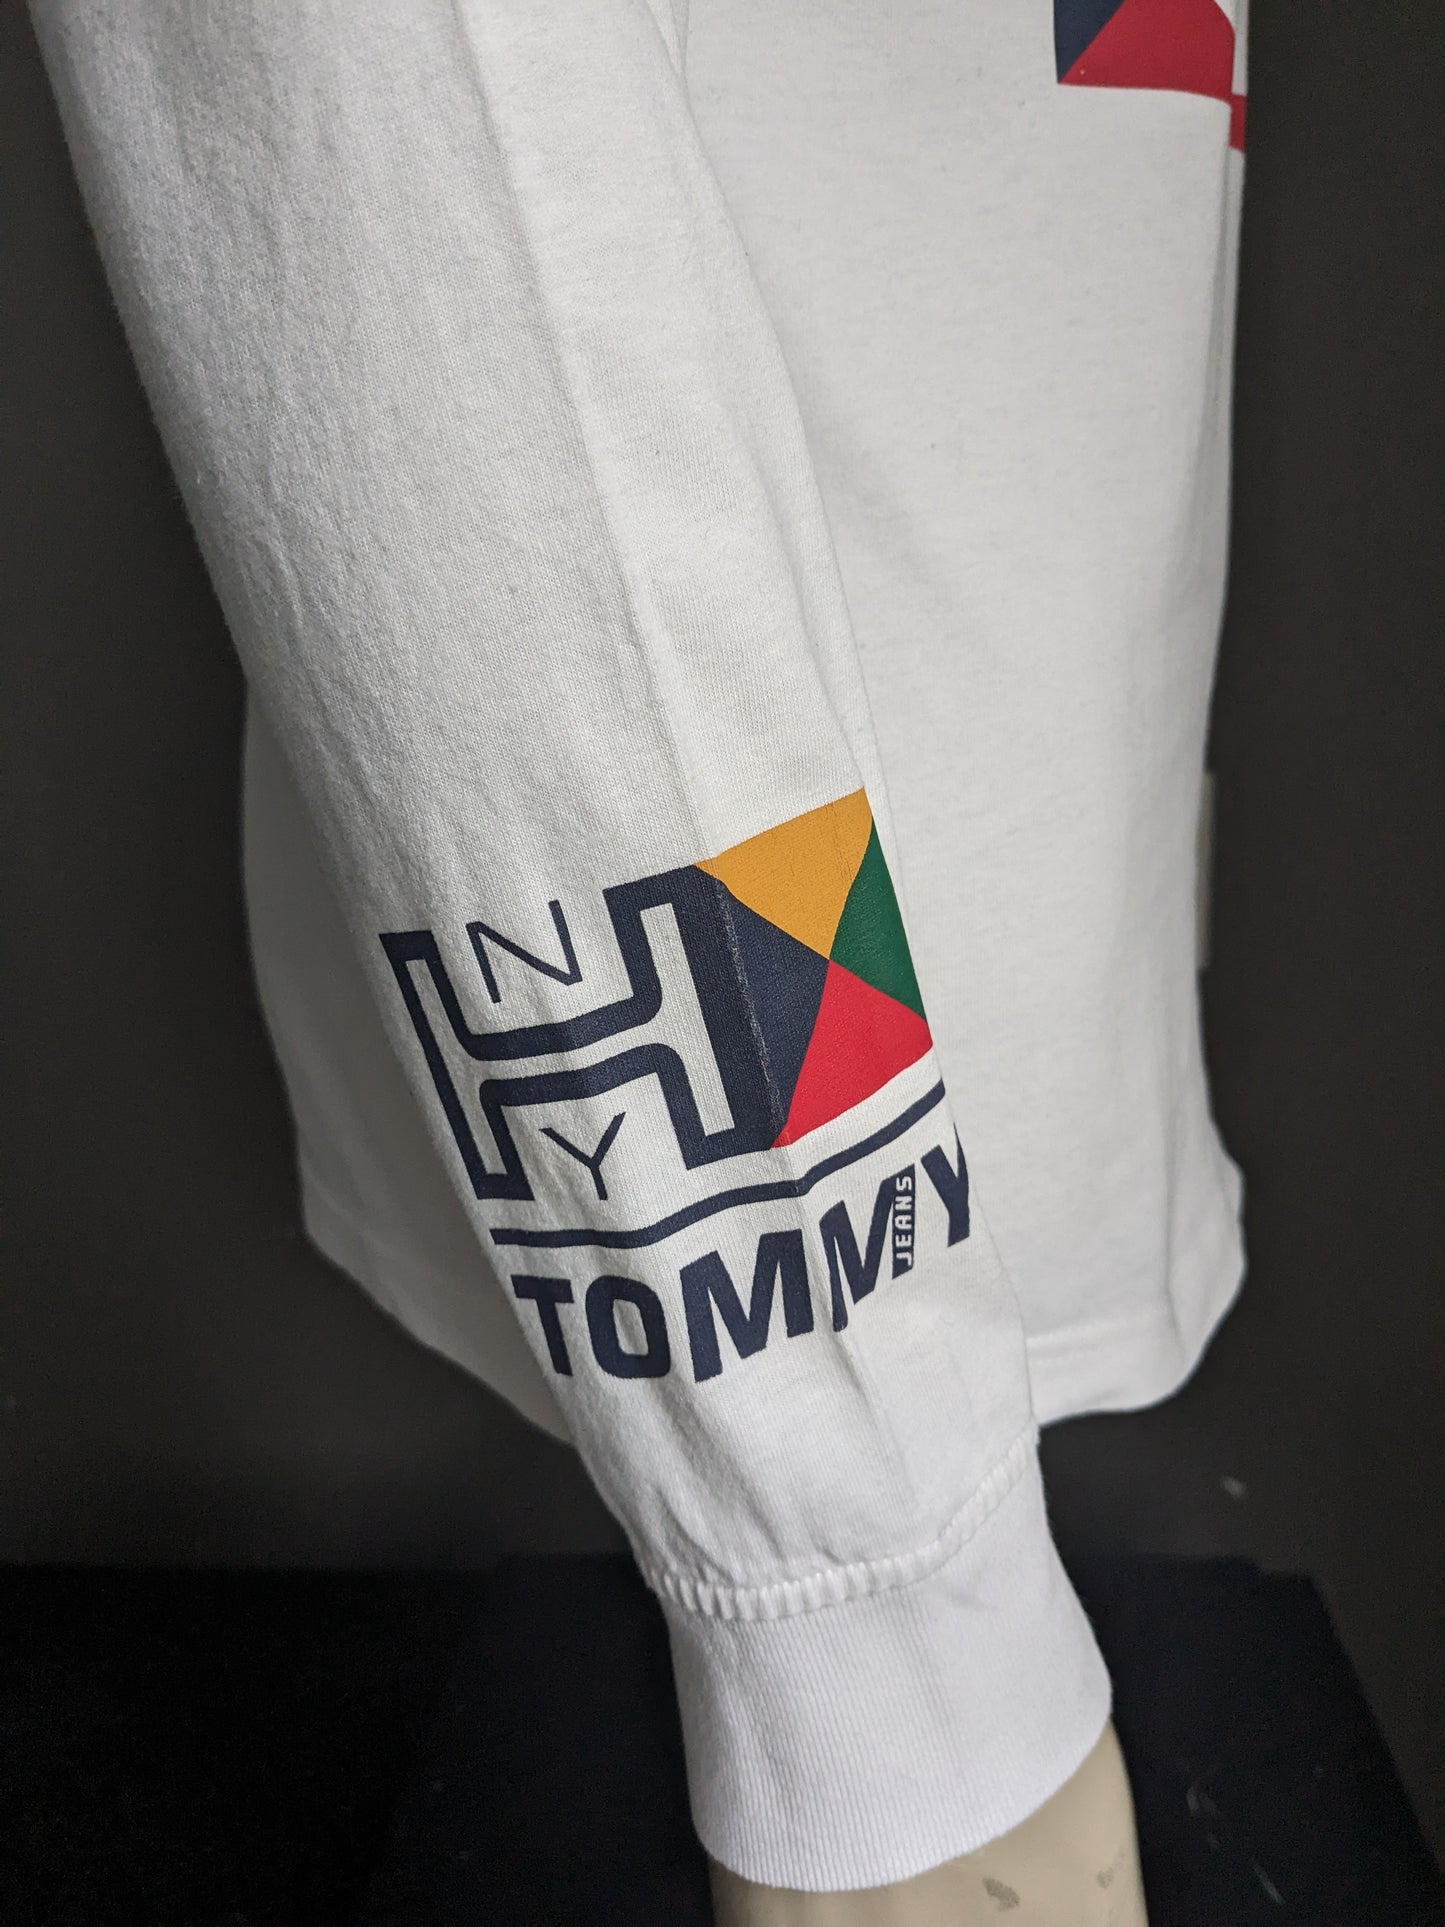 Tommy Jeans Longsleeve. Blanc avec imprimé. Taille M.